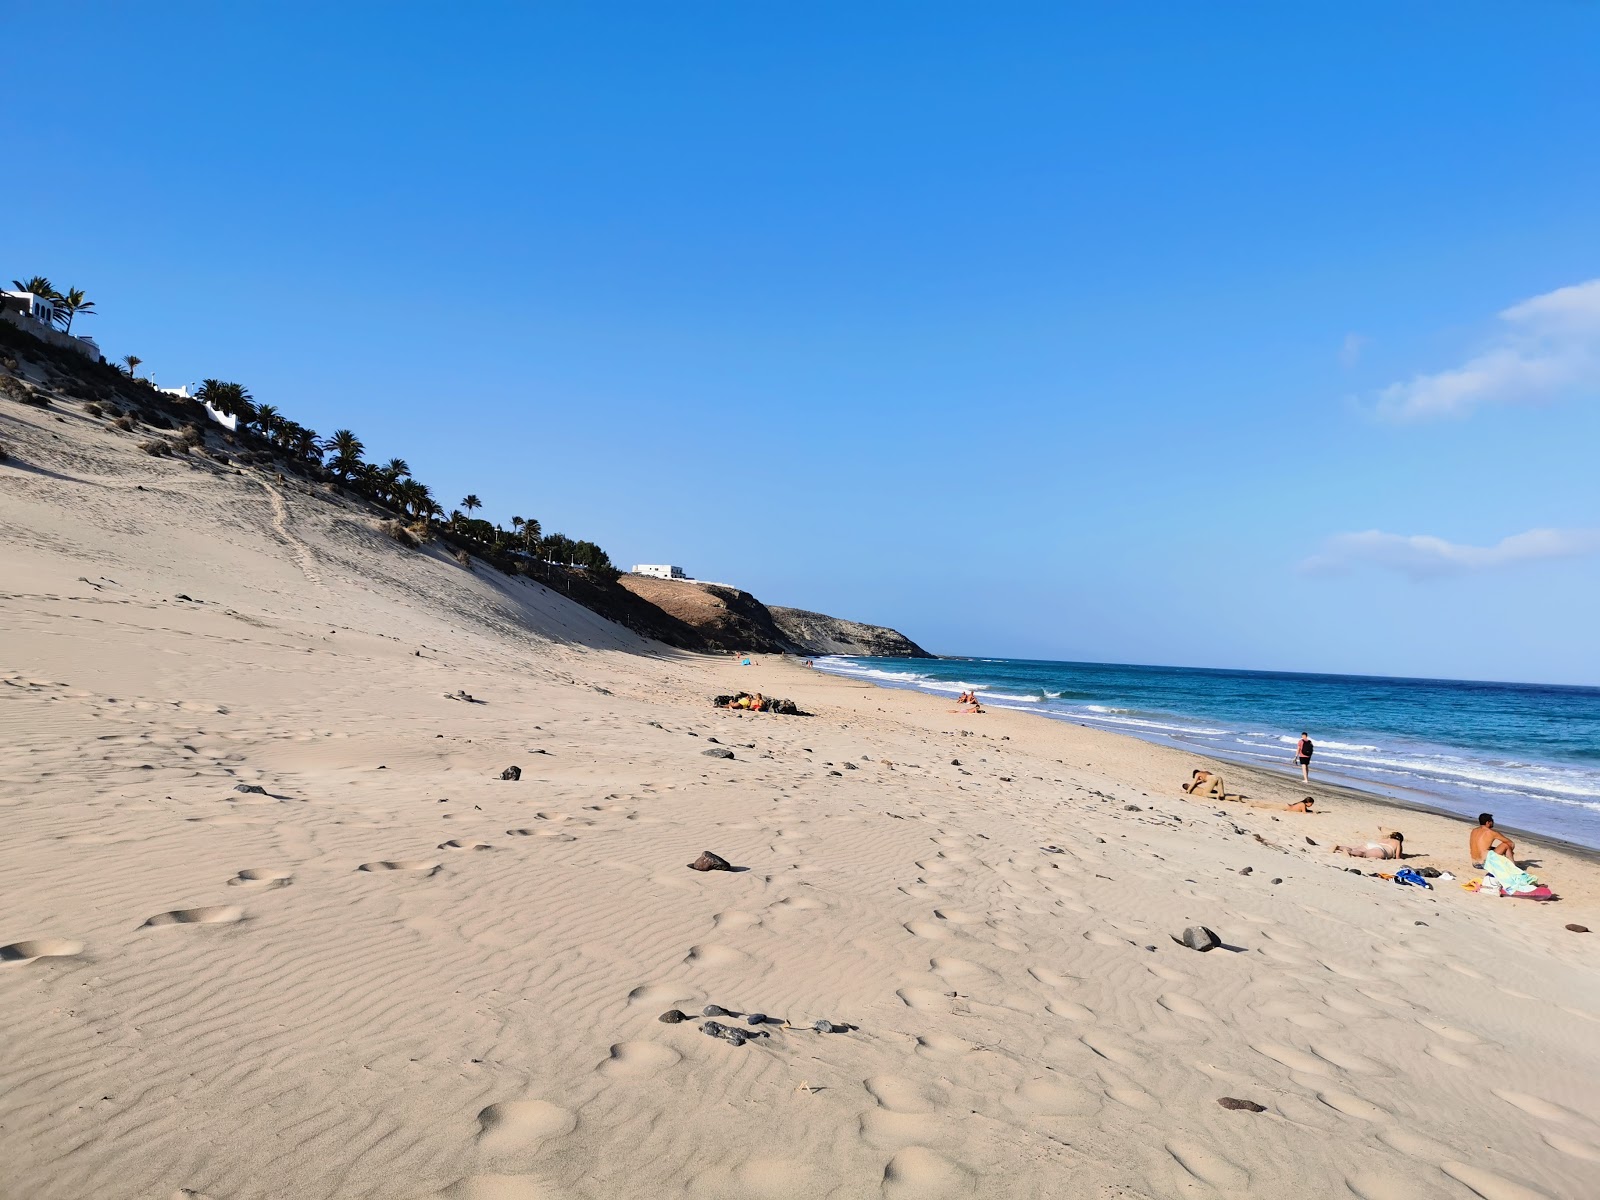 Playa de Esquinzo'in fotoğrafı geniş plaj ile birlikte